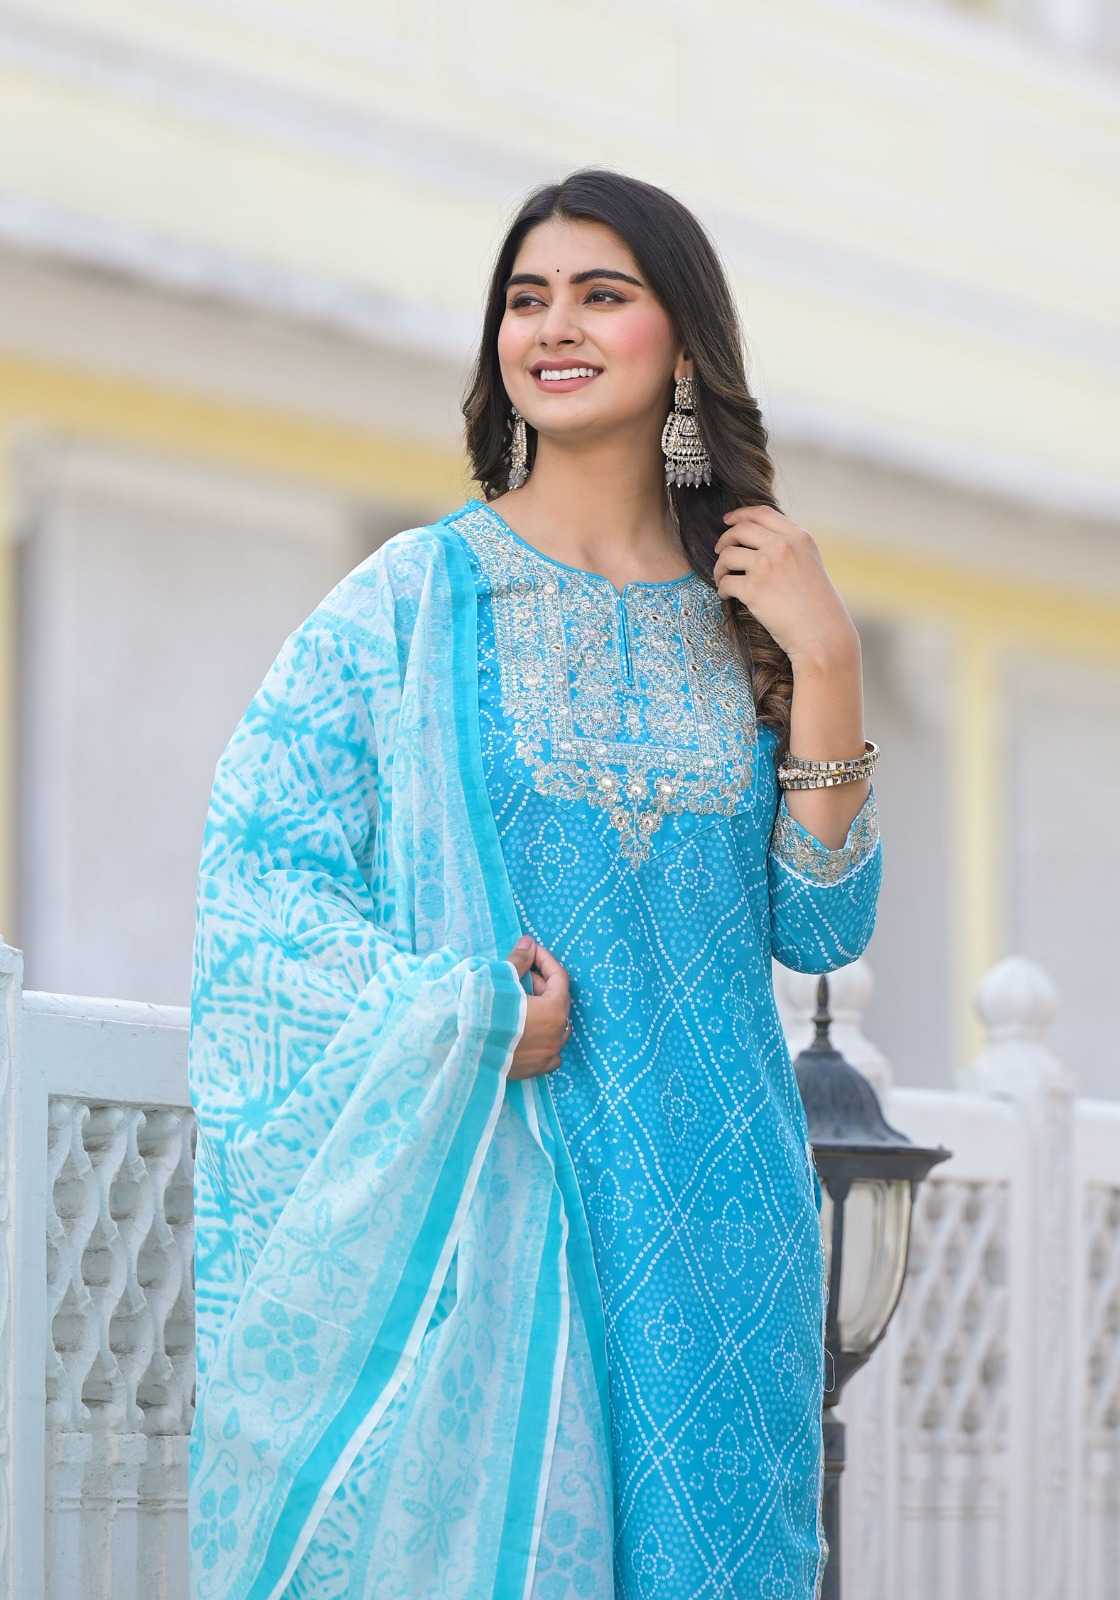 pr tanisha vol 4 fully stitch fancy beautiful look salwar kameez